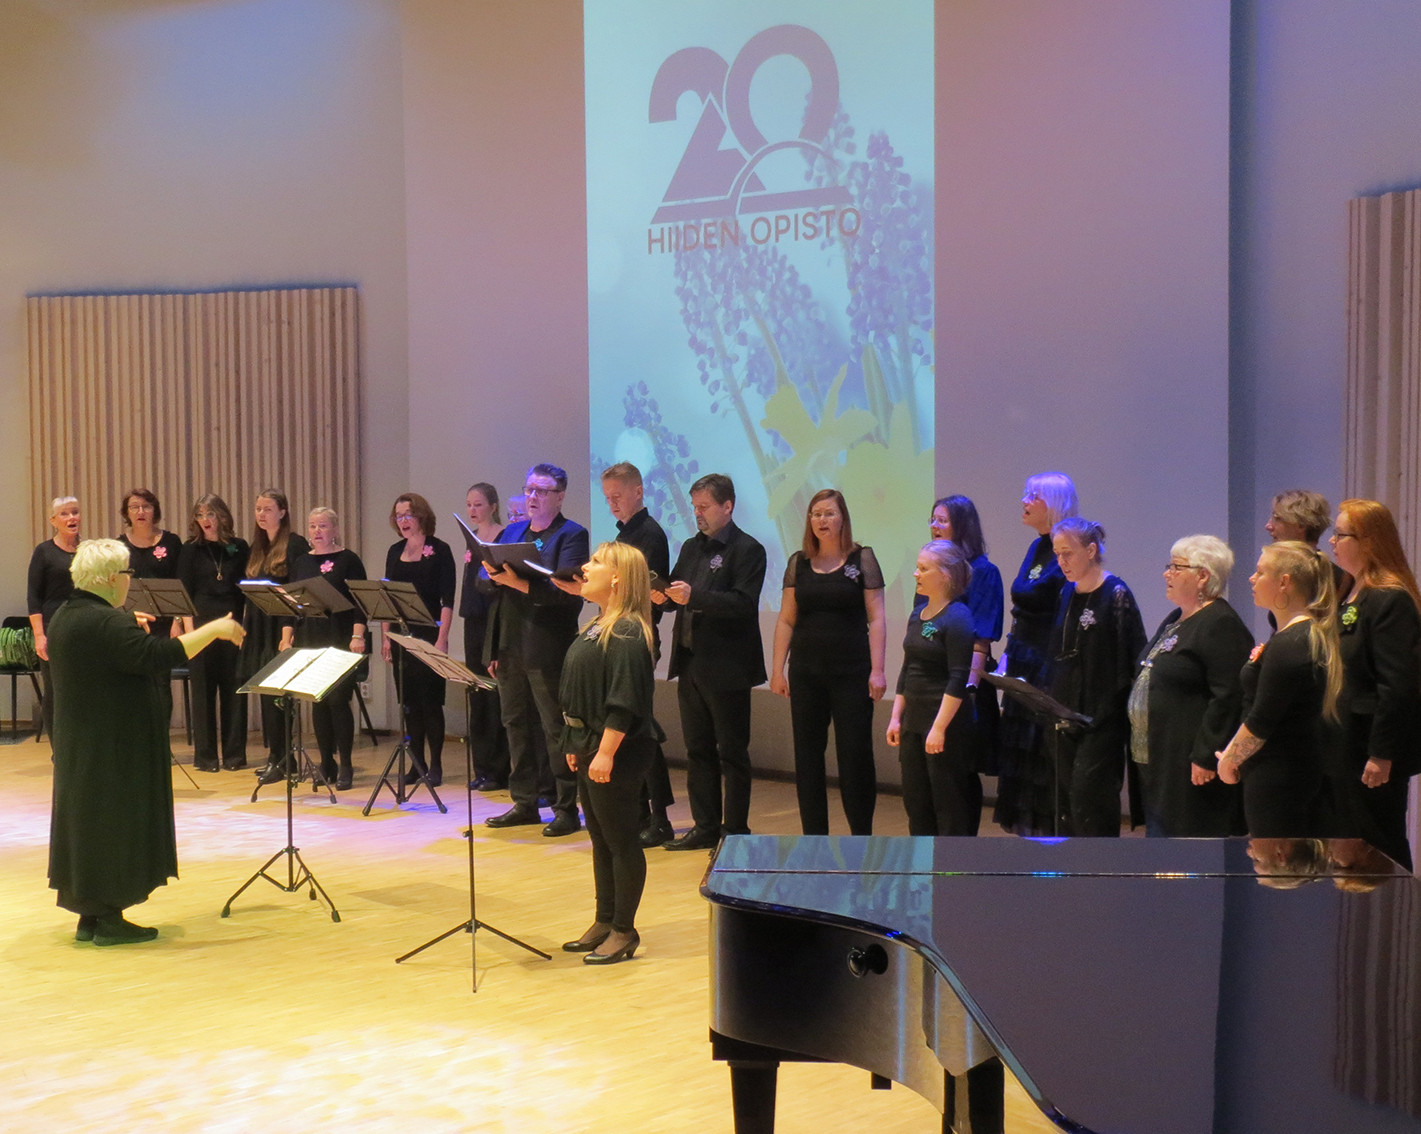 Hiiden Laulu Hiiden Opiston 20-vuotisjuhlassa 9.4.2022.